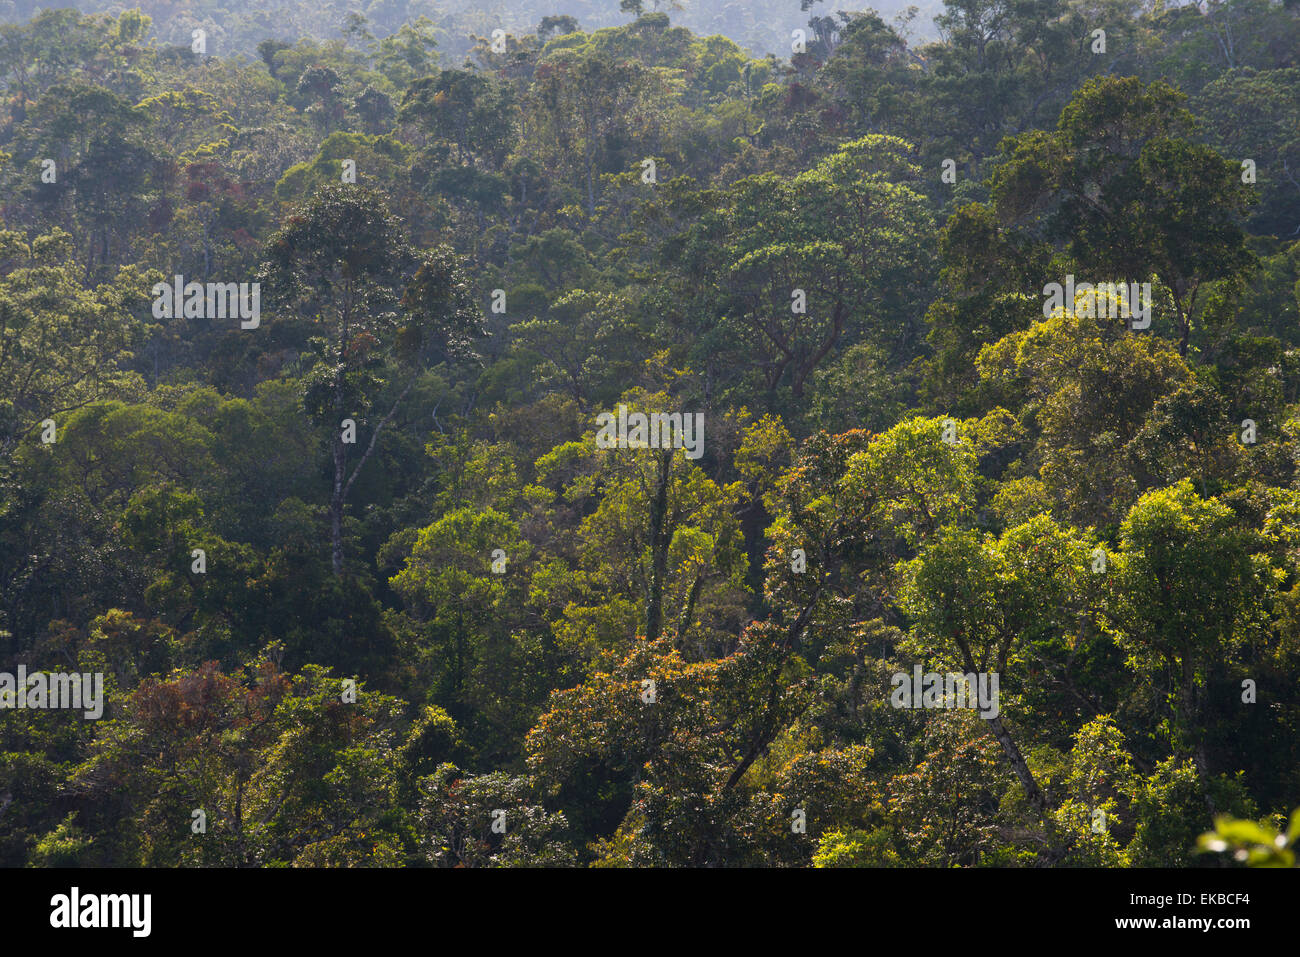 Rainforest à Tully Gorge National Park, une partie de la Wet Tropics Zone du patrimoine mondial, UNESCO, Queensland, Australie Banque D'Images